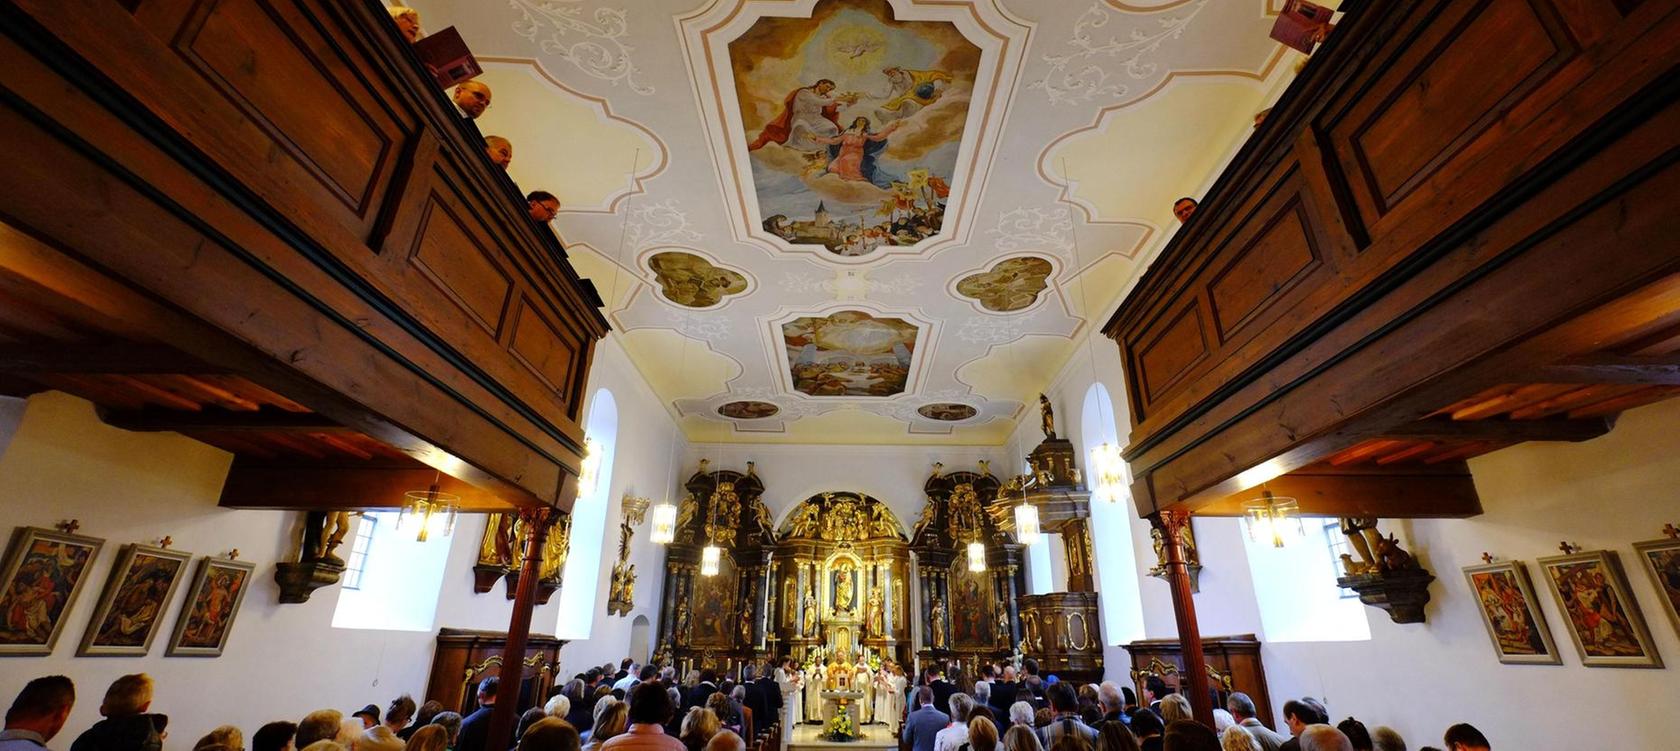 Hannberger Wehrkirche ist wieder offen